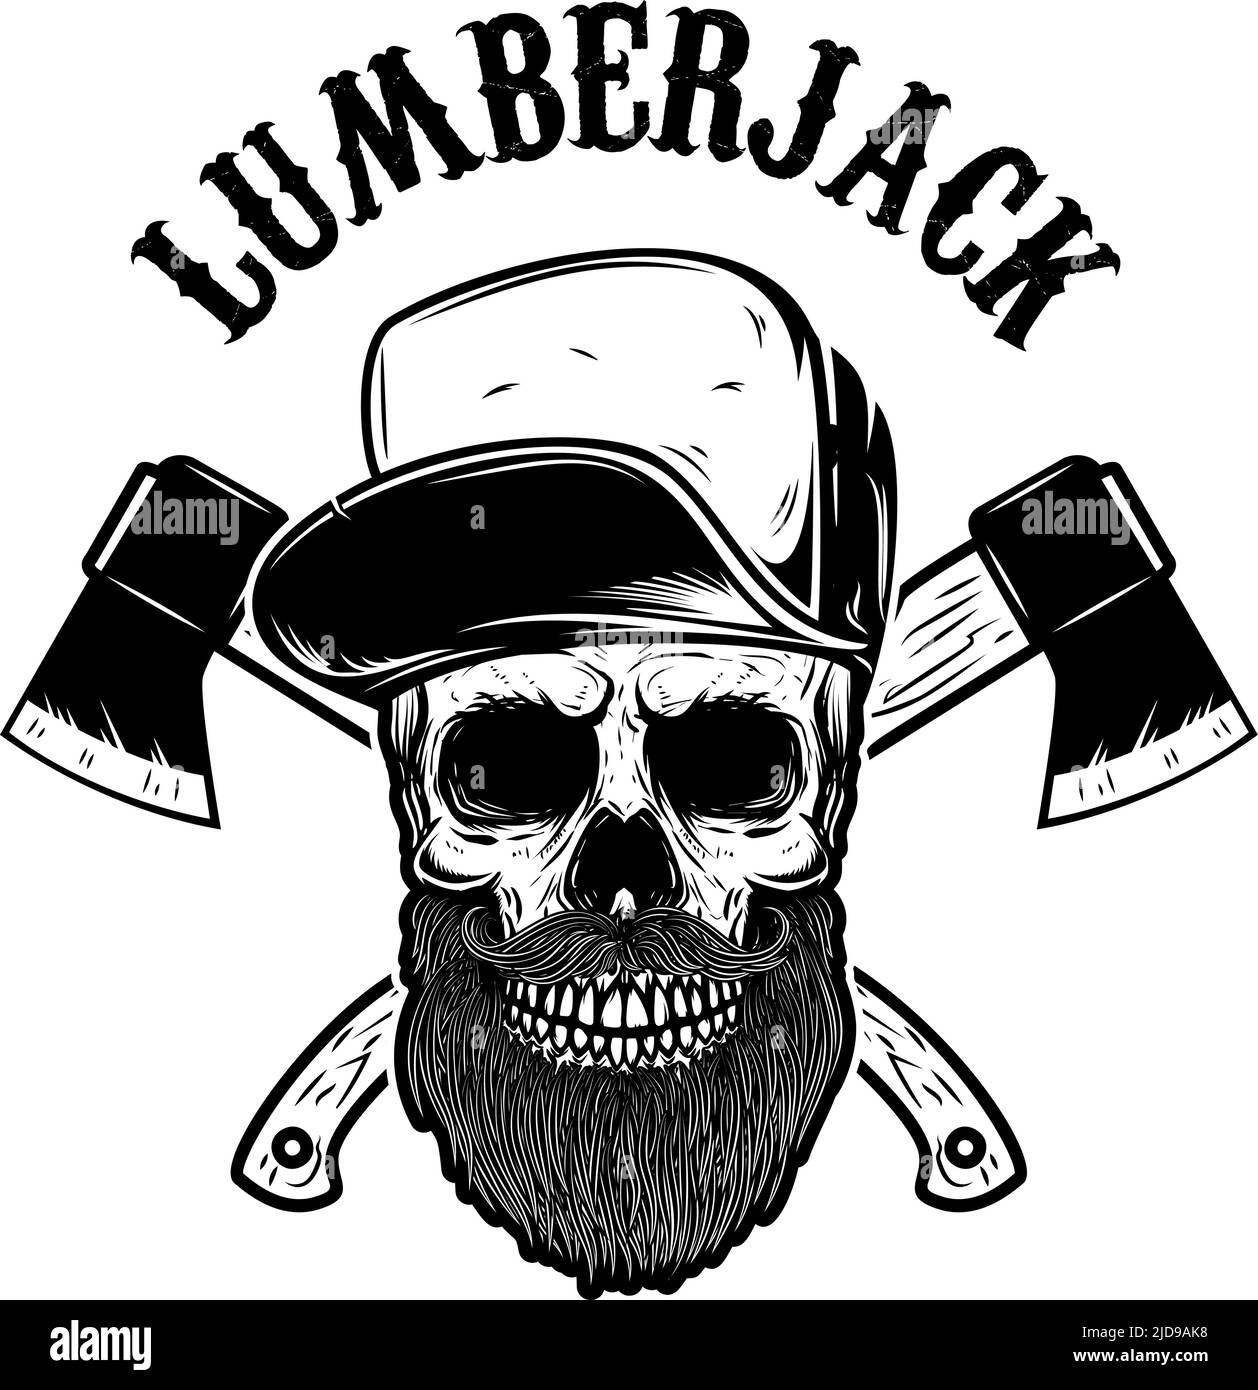 Axes de lumberjack croisés avec crâne de lumberjack. Élément design pour logo, emblème, affiche, affiche, t-shirt. Illustration vectorielle Illustration de Vecteur